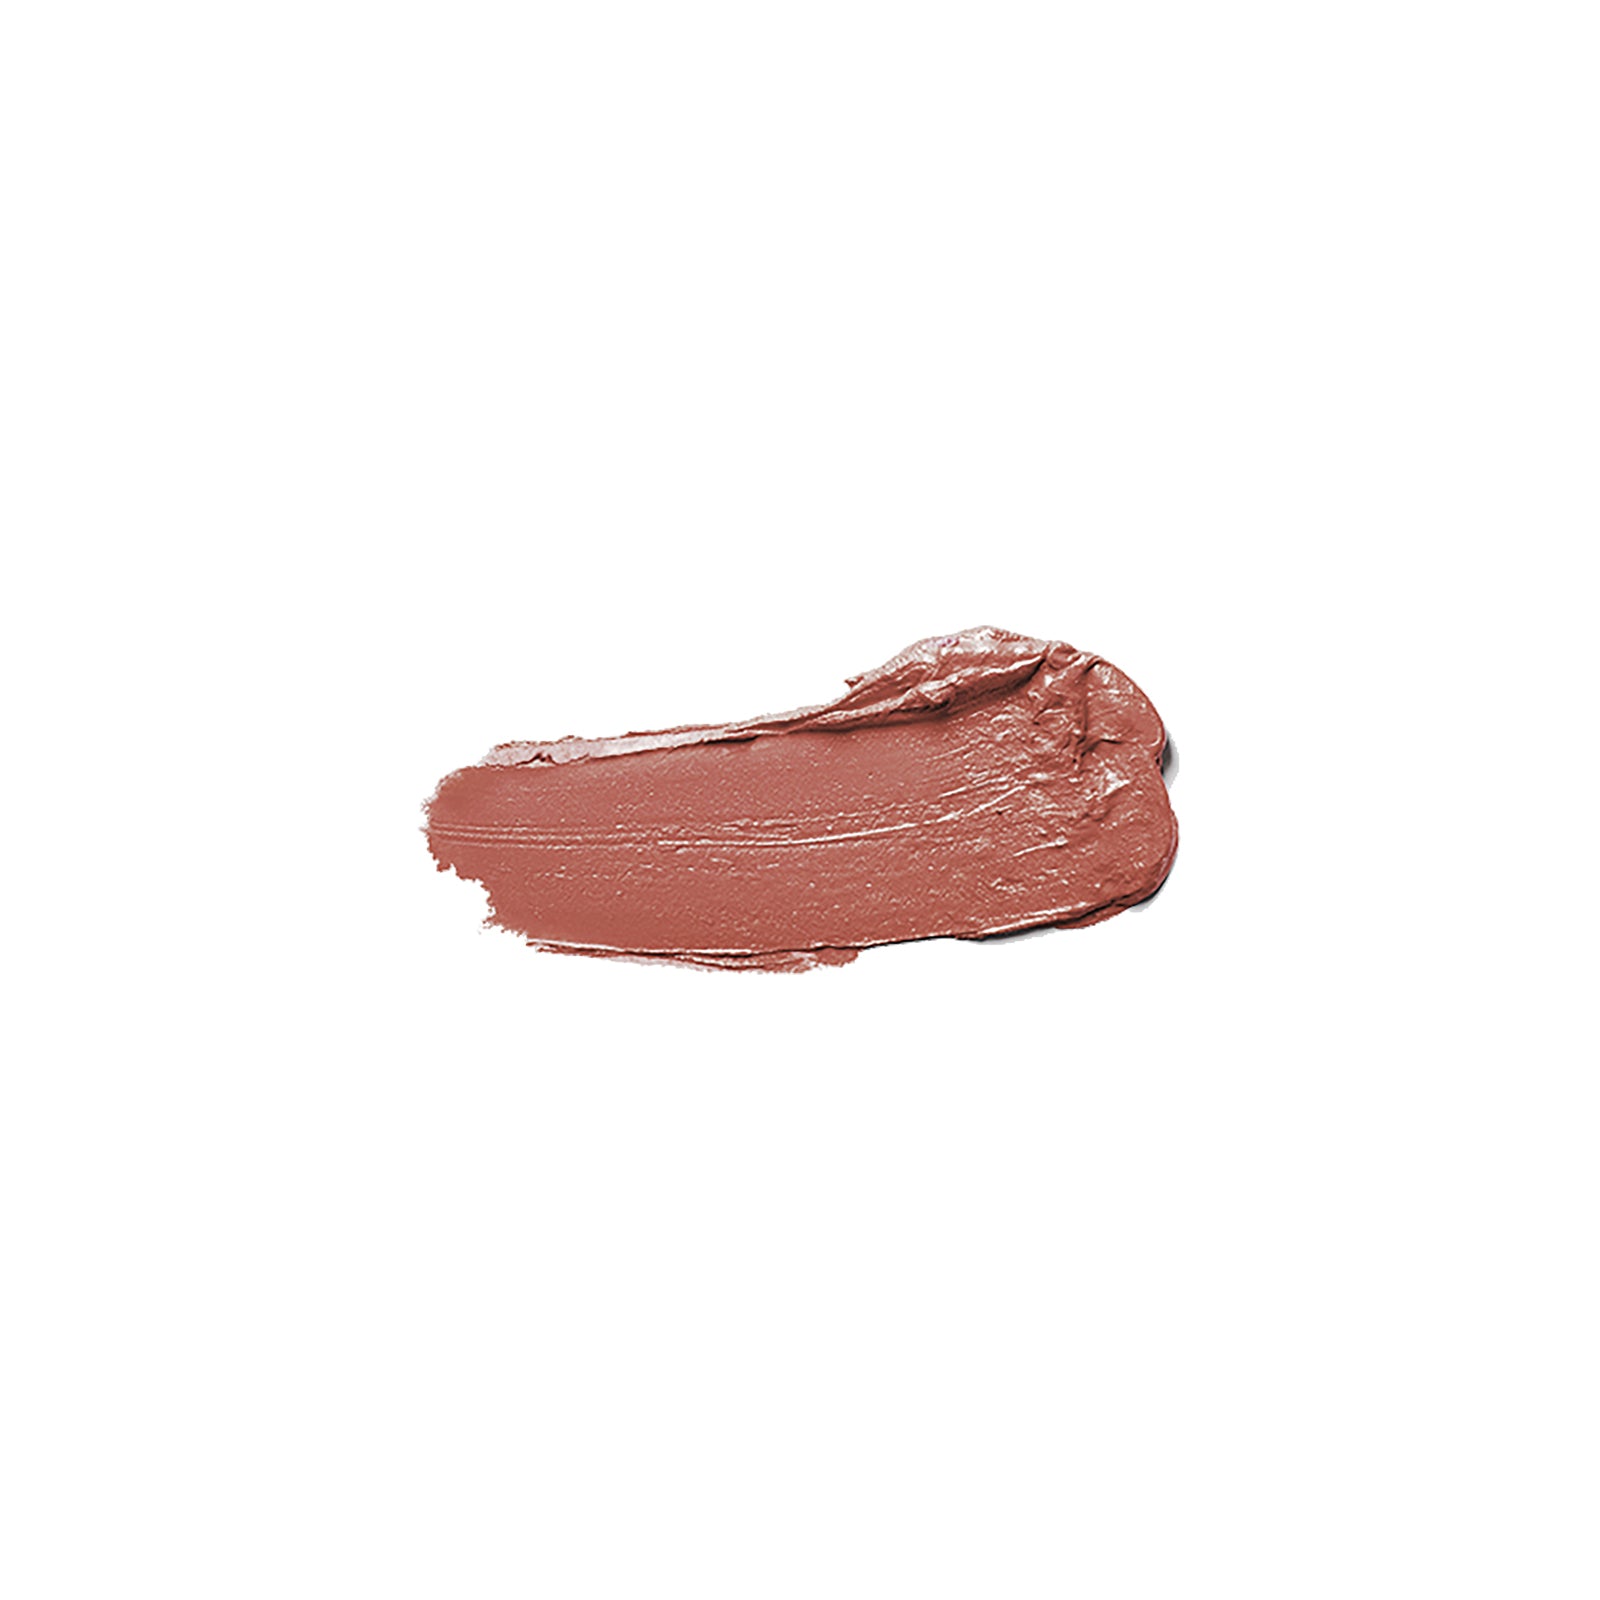 Matte Liquid Lips (025, Delicate)